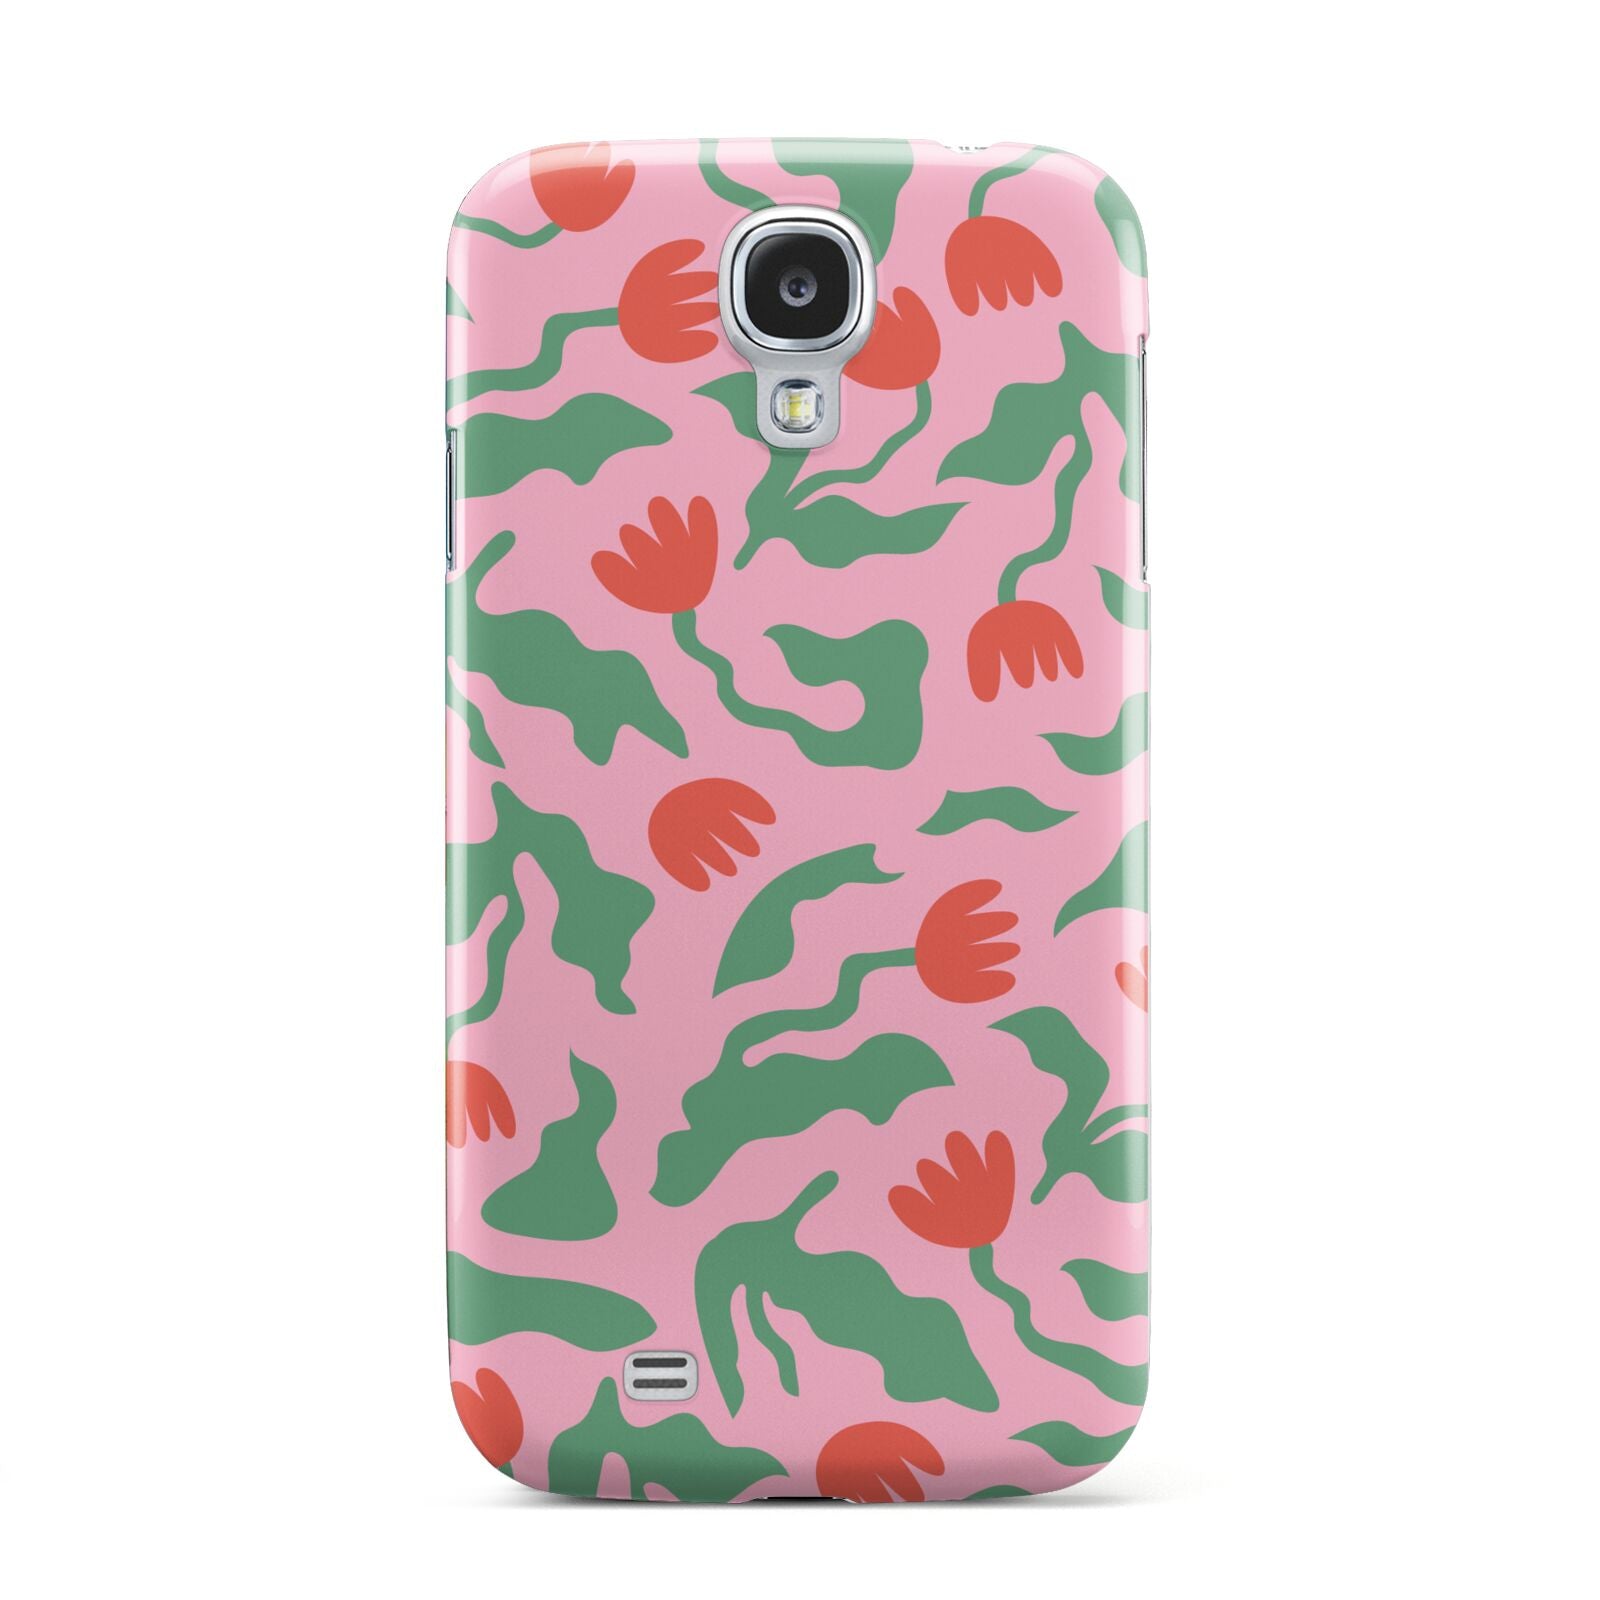 Simple Floral Samsung Galaxy S4 Case